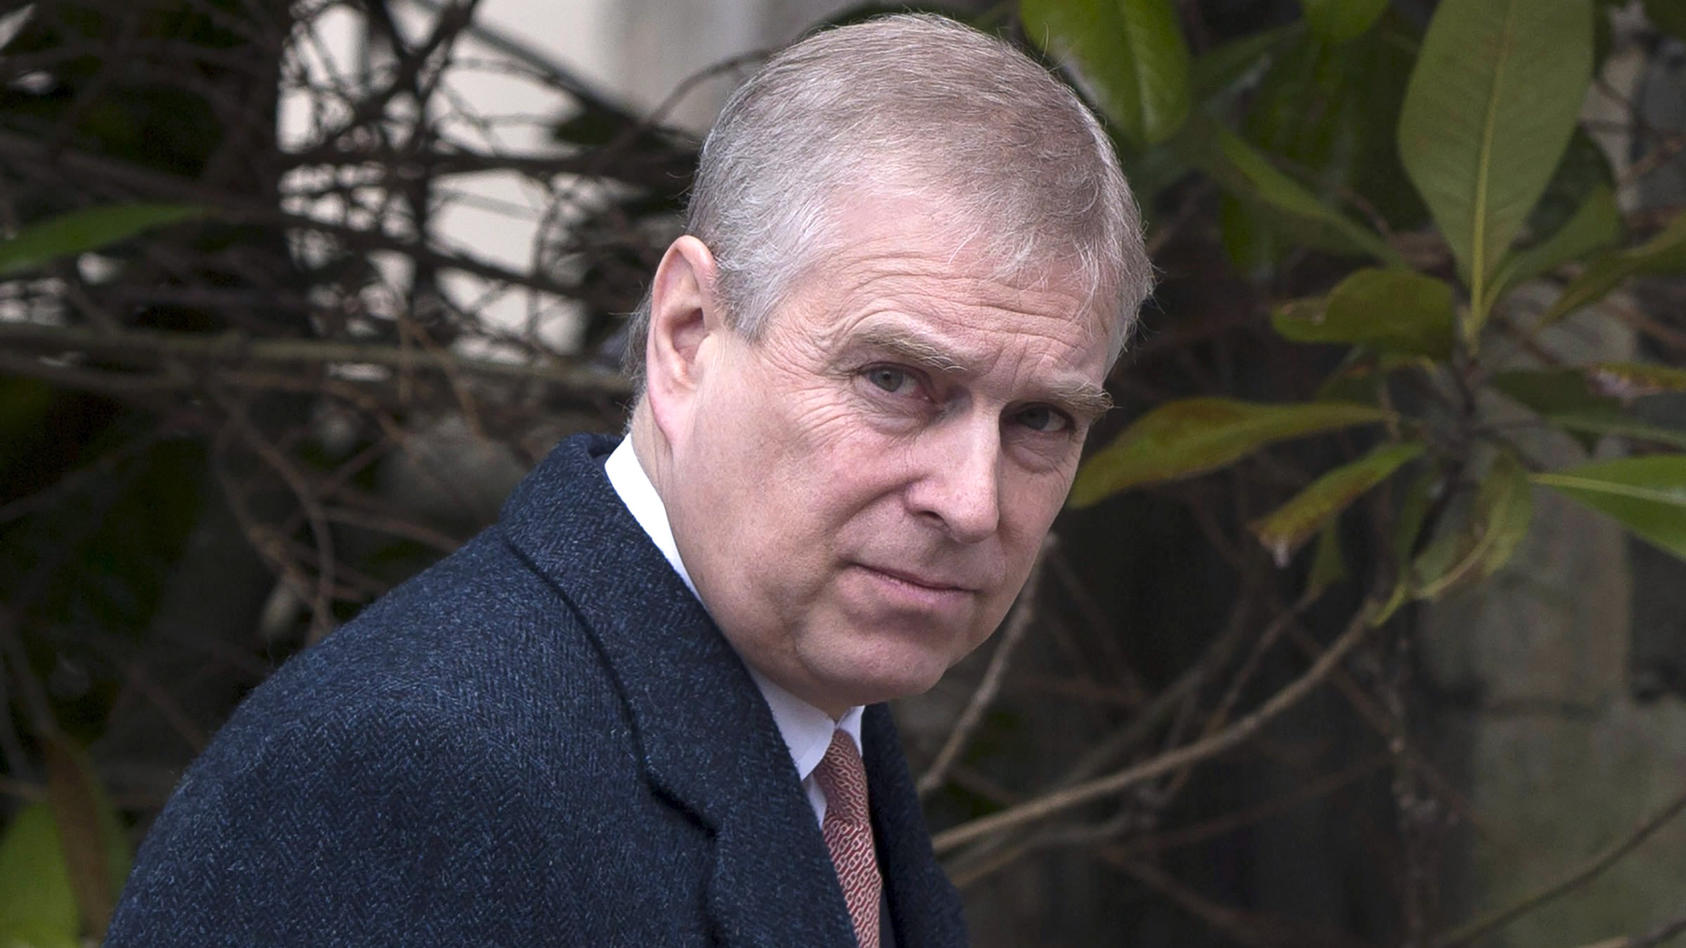 Gericht befasst sich mit Missbrauchsvorwürfen gegen Prinz Andrew